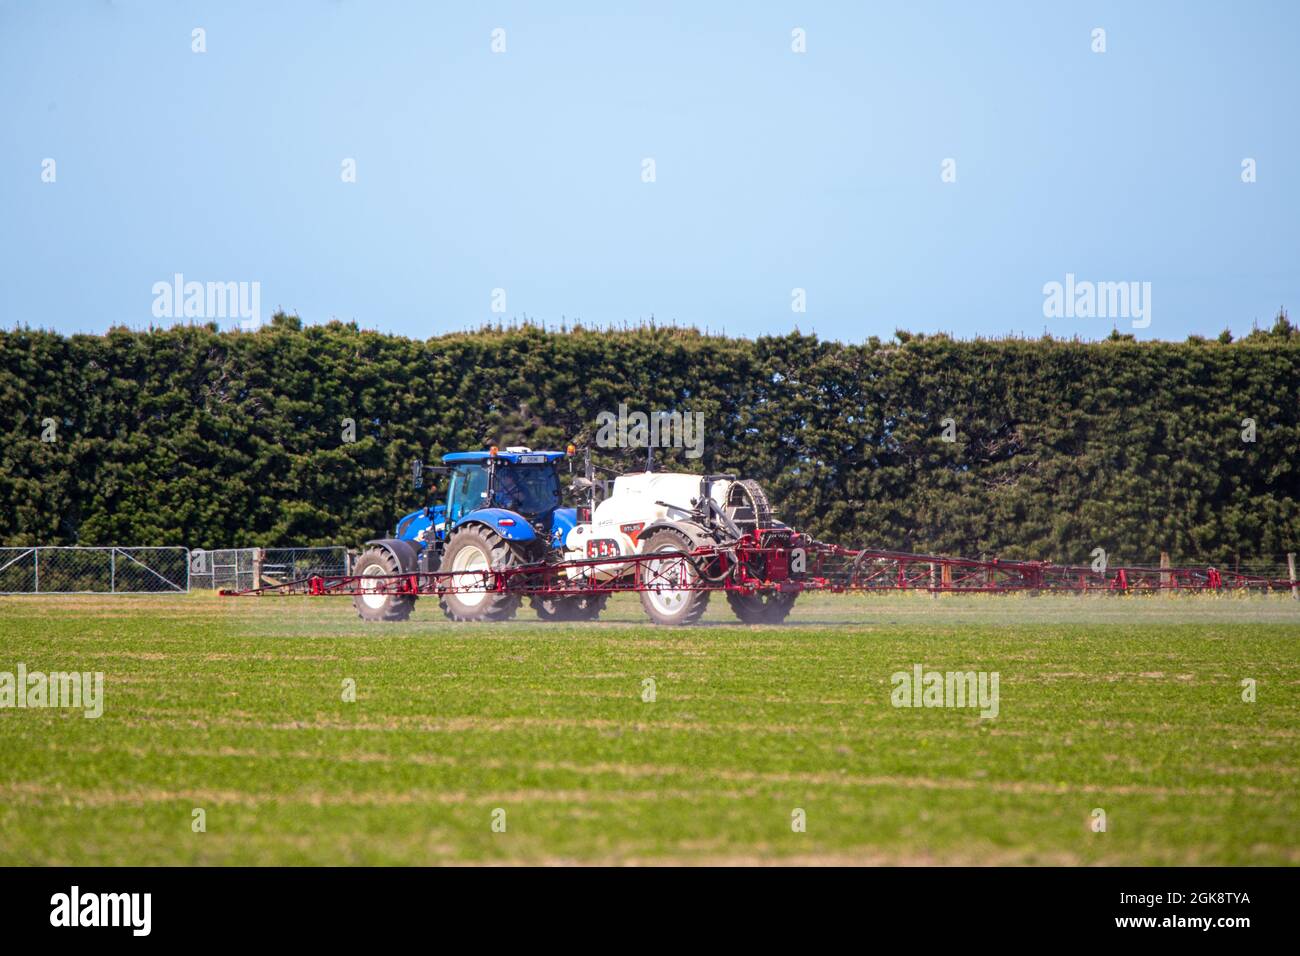 Canterbury, Nueva Zelanda, septiembre de 11 2021: Un tractor New Holland con pulverizador de cultivo Atlas conectado, rocía una cosecha agrícola en primavera Foto de stock